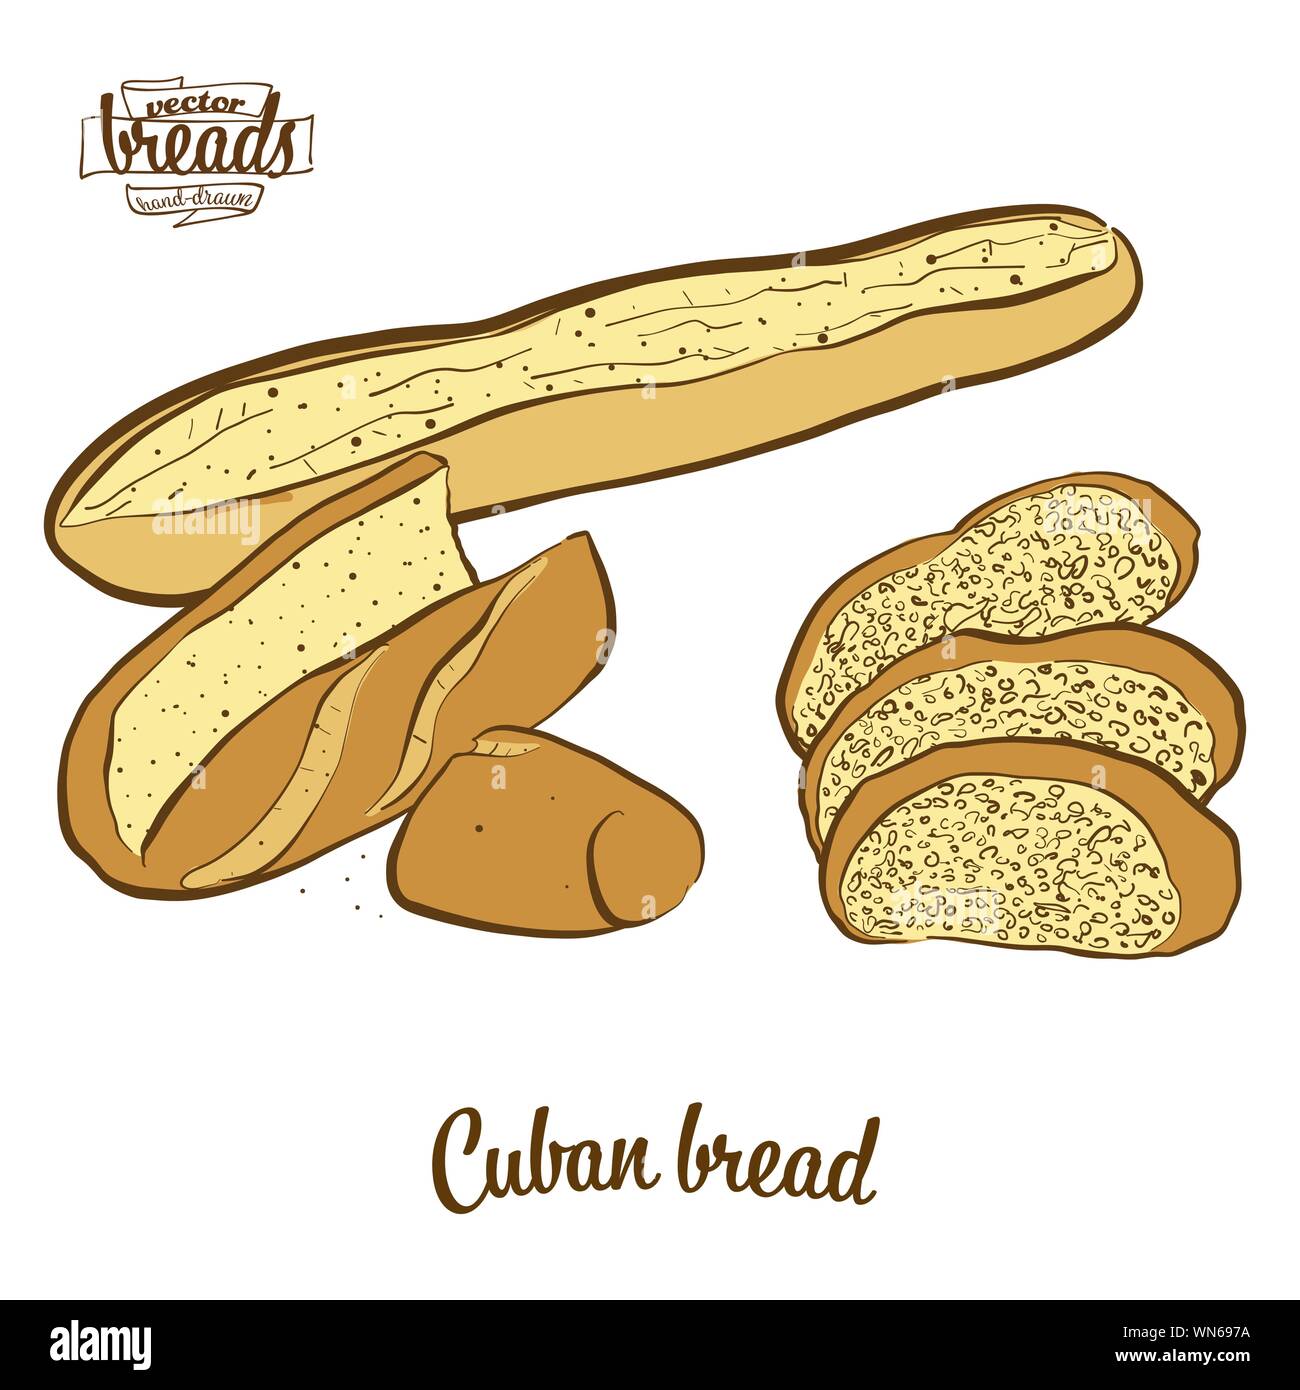 Disegno colorato di pane cubana il pane. Illustrazione Vettoriale di pane di lievito alimentare, usualmente noto negli Stati Uniti. Pane colorato schizzi. Illustrazione Vettoriale